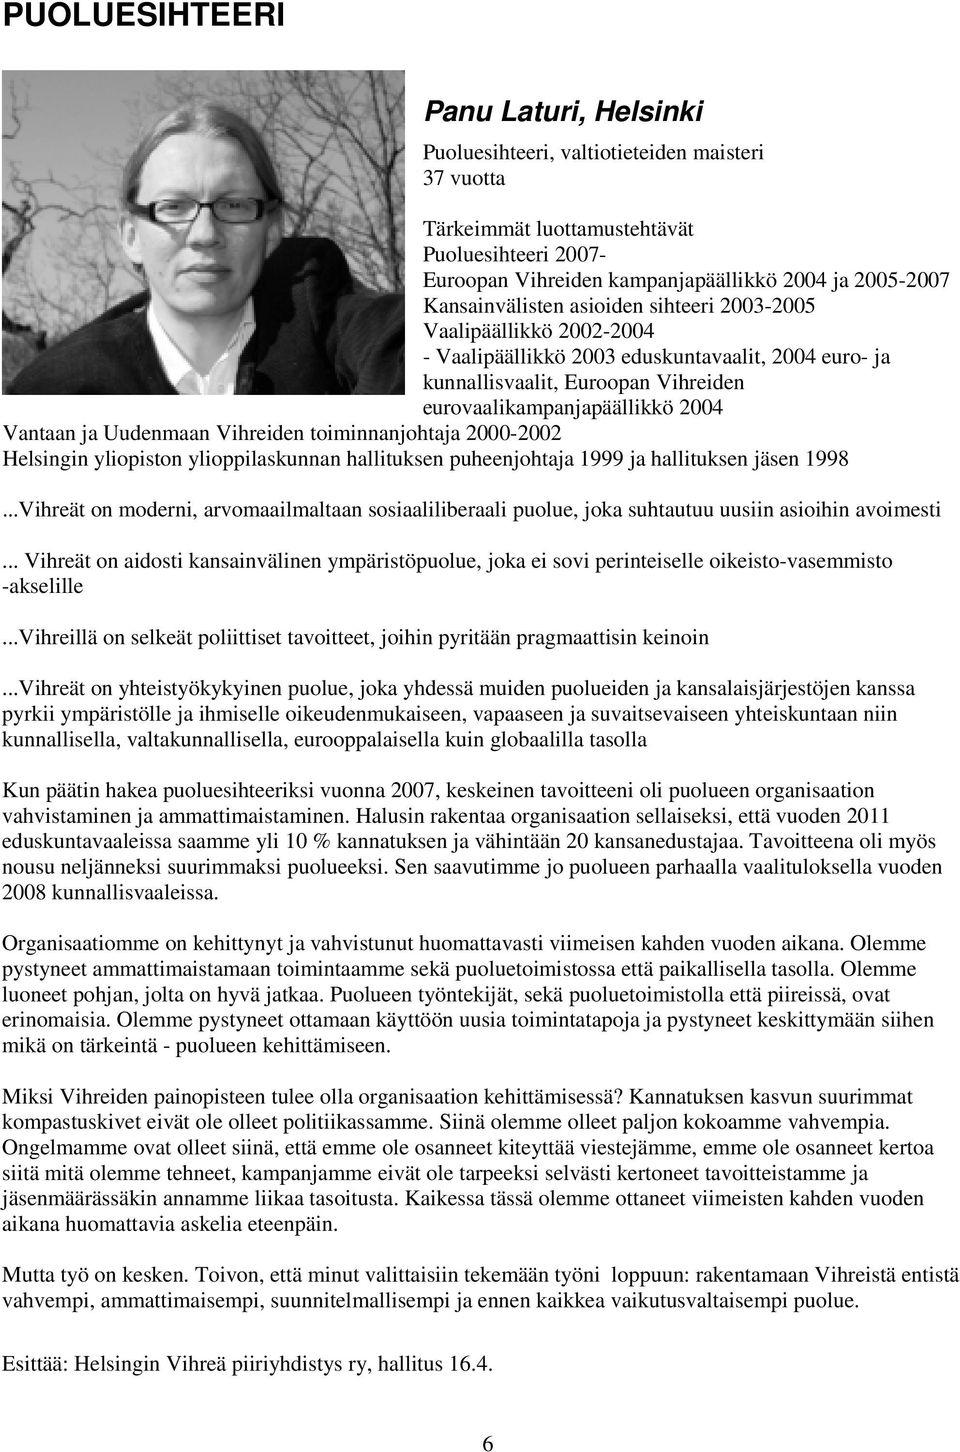 ja Uudenmaan Vihreiden toiminnanjohtaja 2000-2002 Helsingin yliopiston ylioppilaskunnan hallituksen puheenjohtaja 1999 ja hallituksen jäsen 1998.